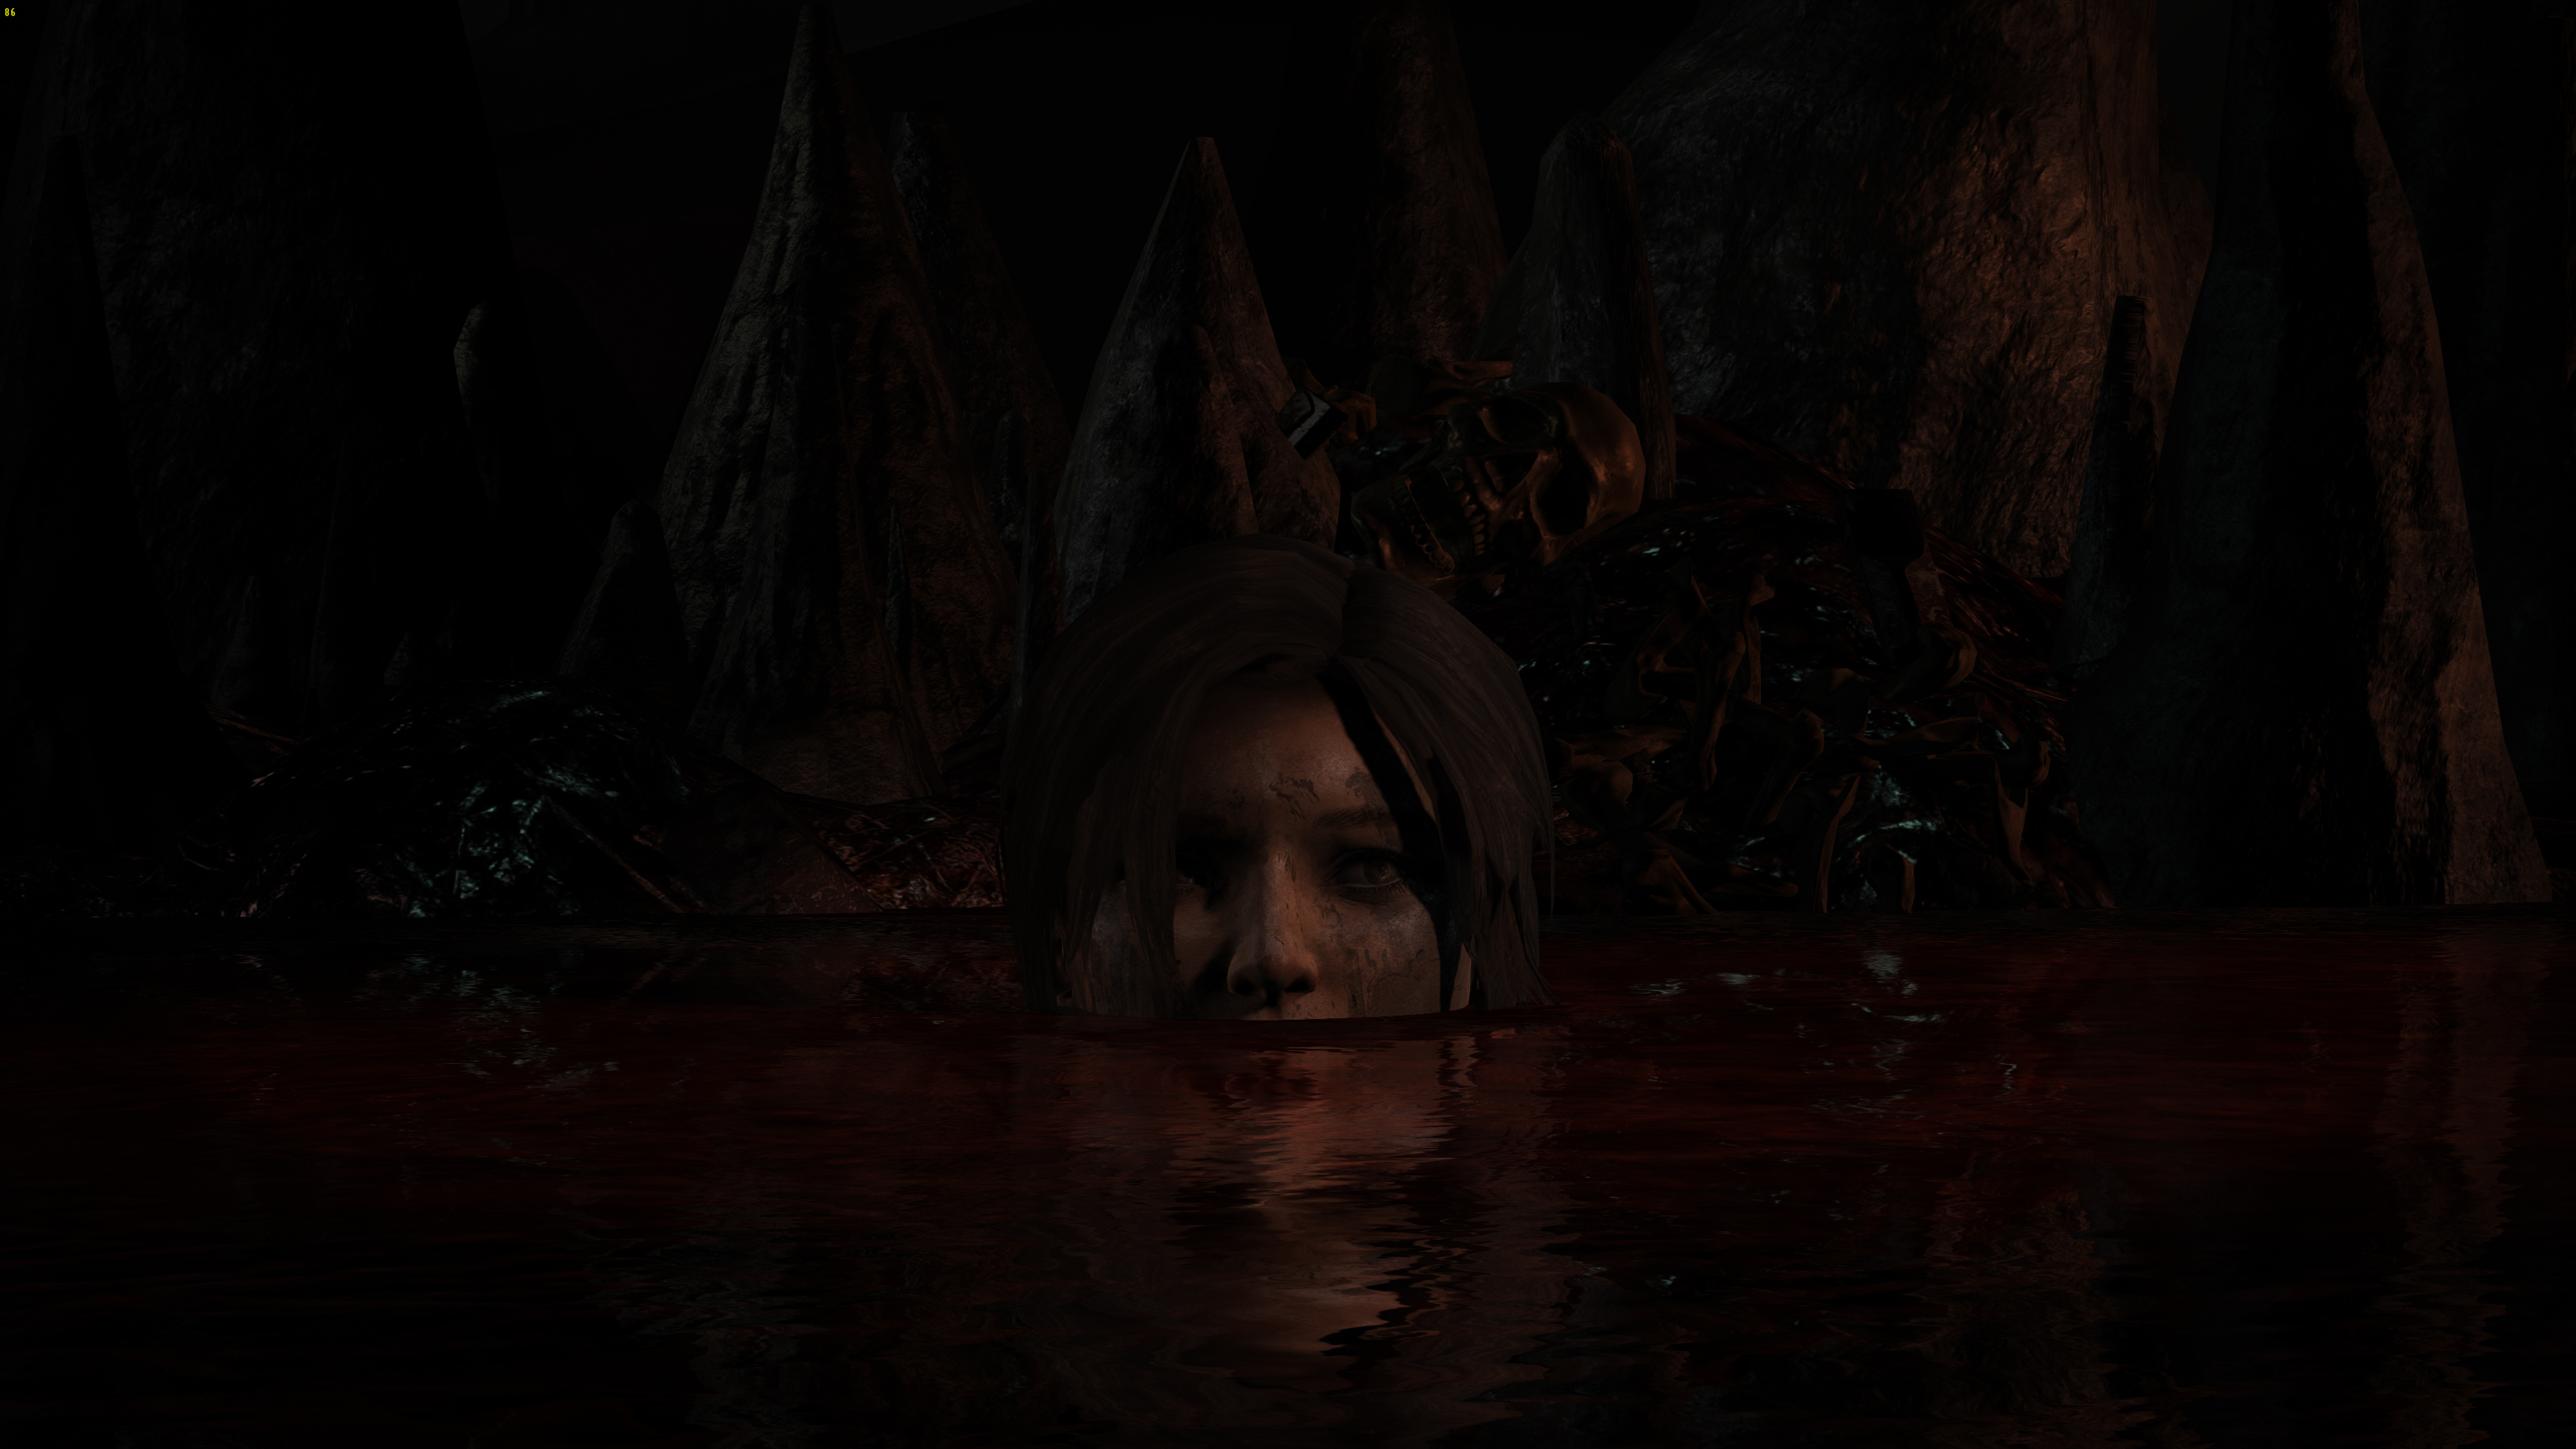 Descarga gratuita de fondo de pantalla para móvil de Tomb Raider, Lara Croft, Videojuego.